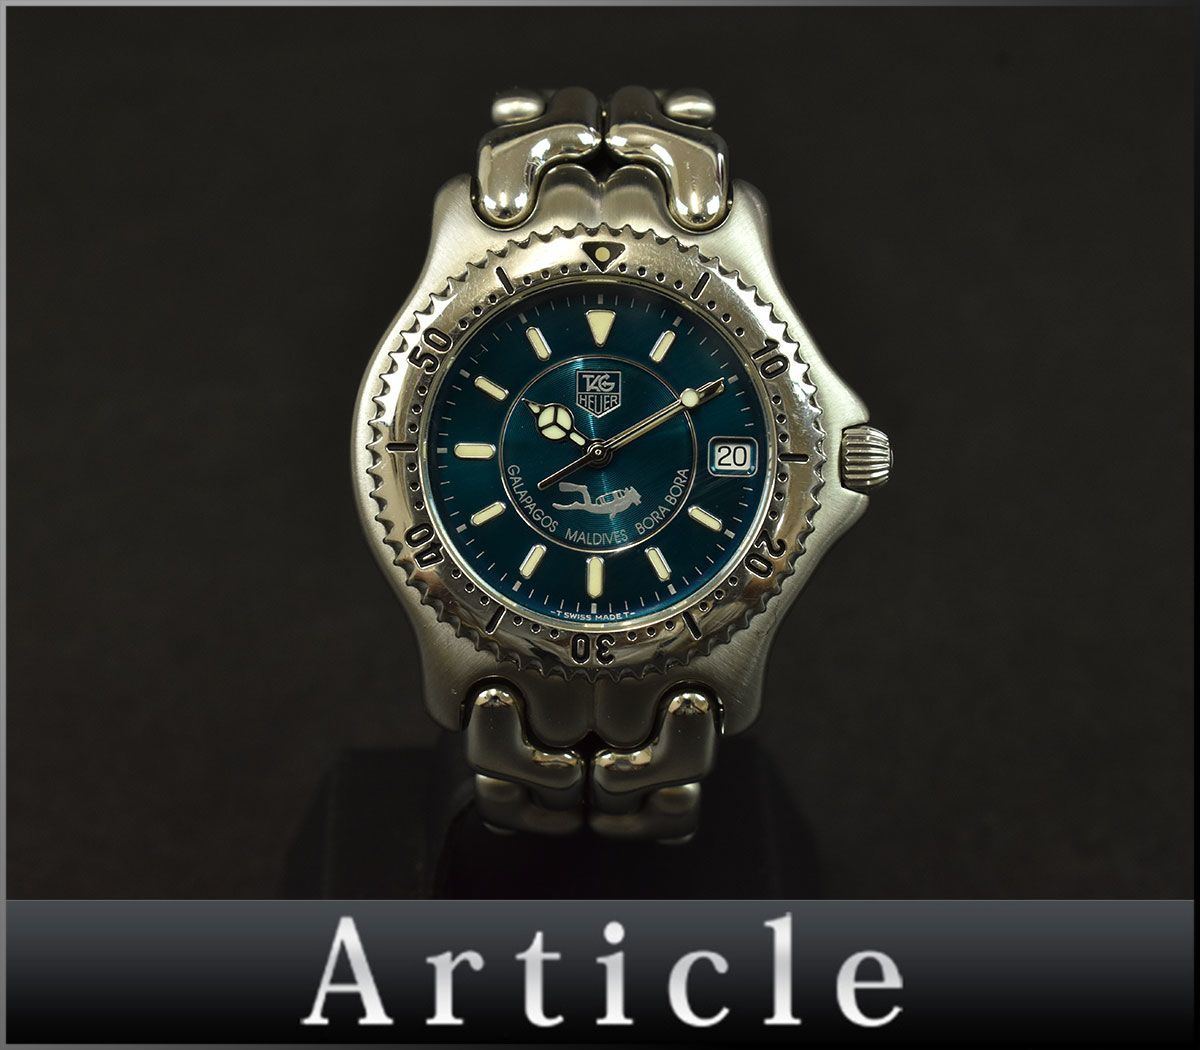 160057□美品 動作確認済 TAG Heuer タグホイヤー S/el セルシリーズ ガラパゴス モルジブ ボラボラ 腕時計 デイト 3針 WG111K メンズ/ D